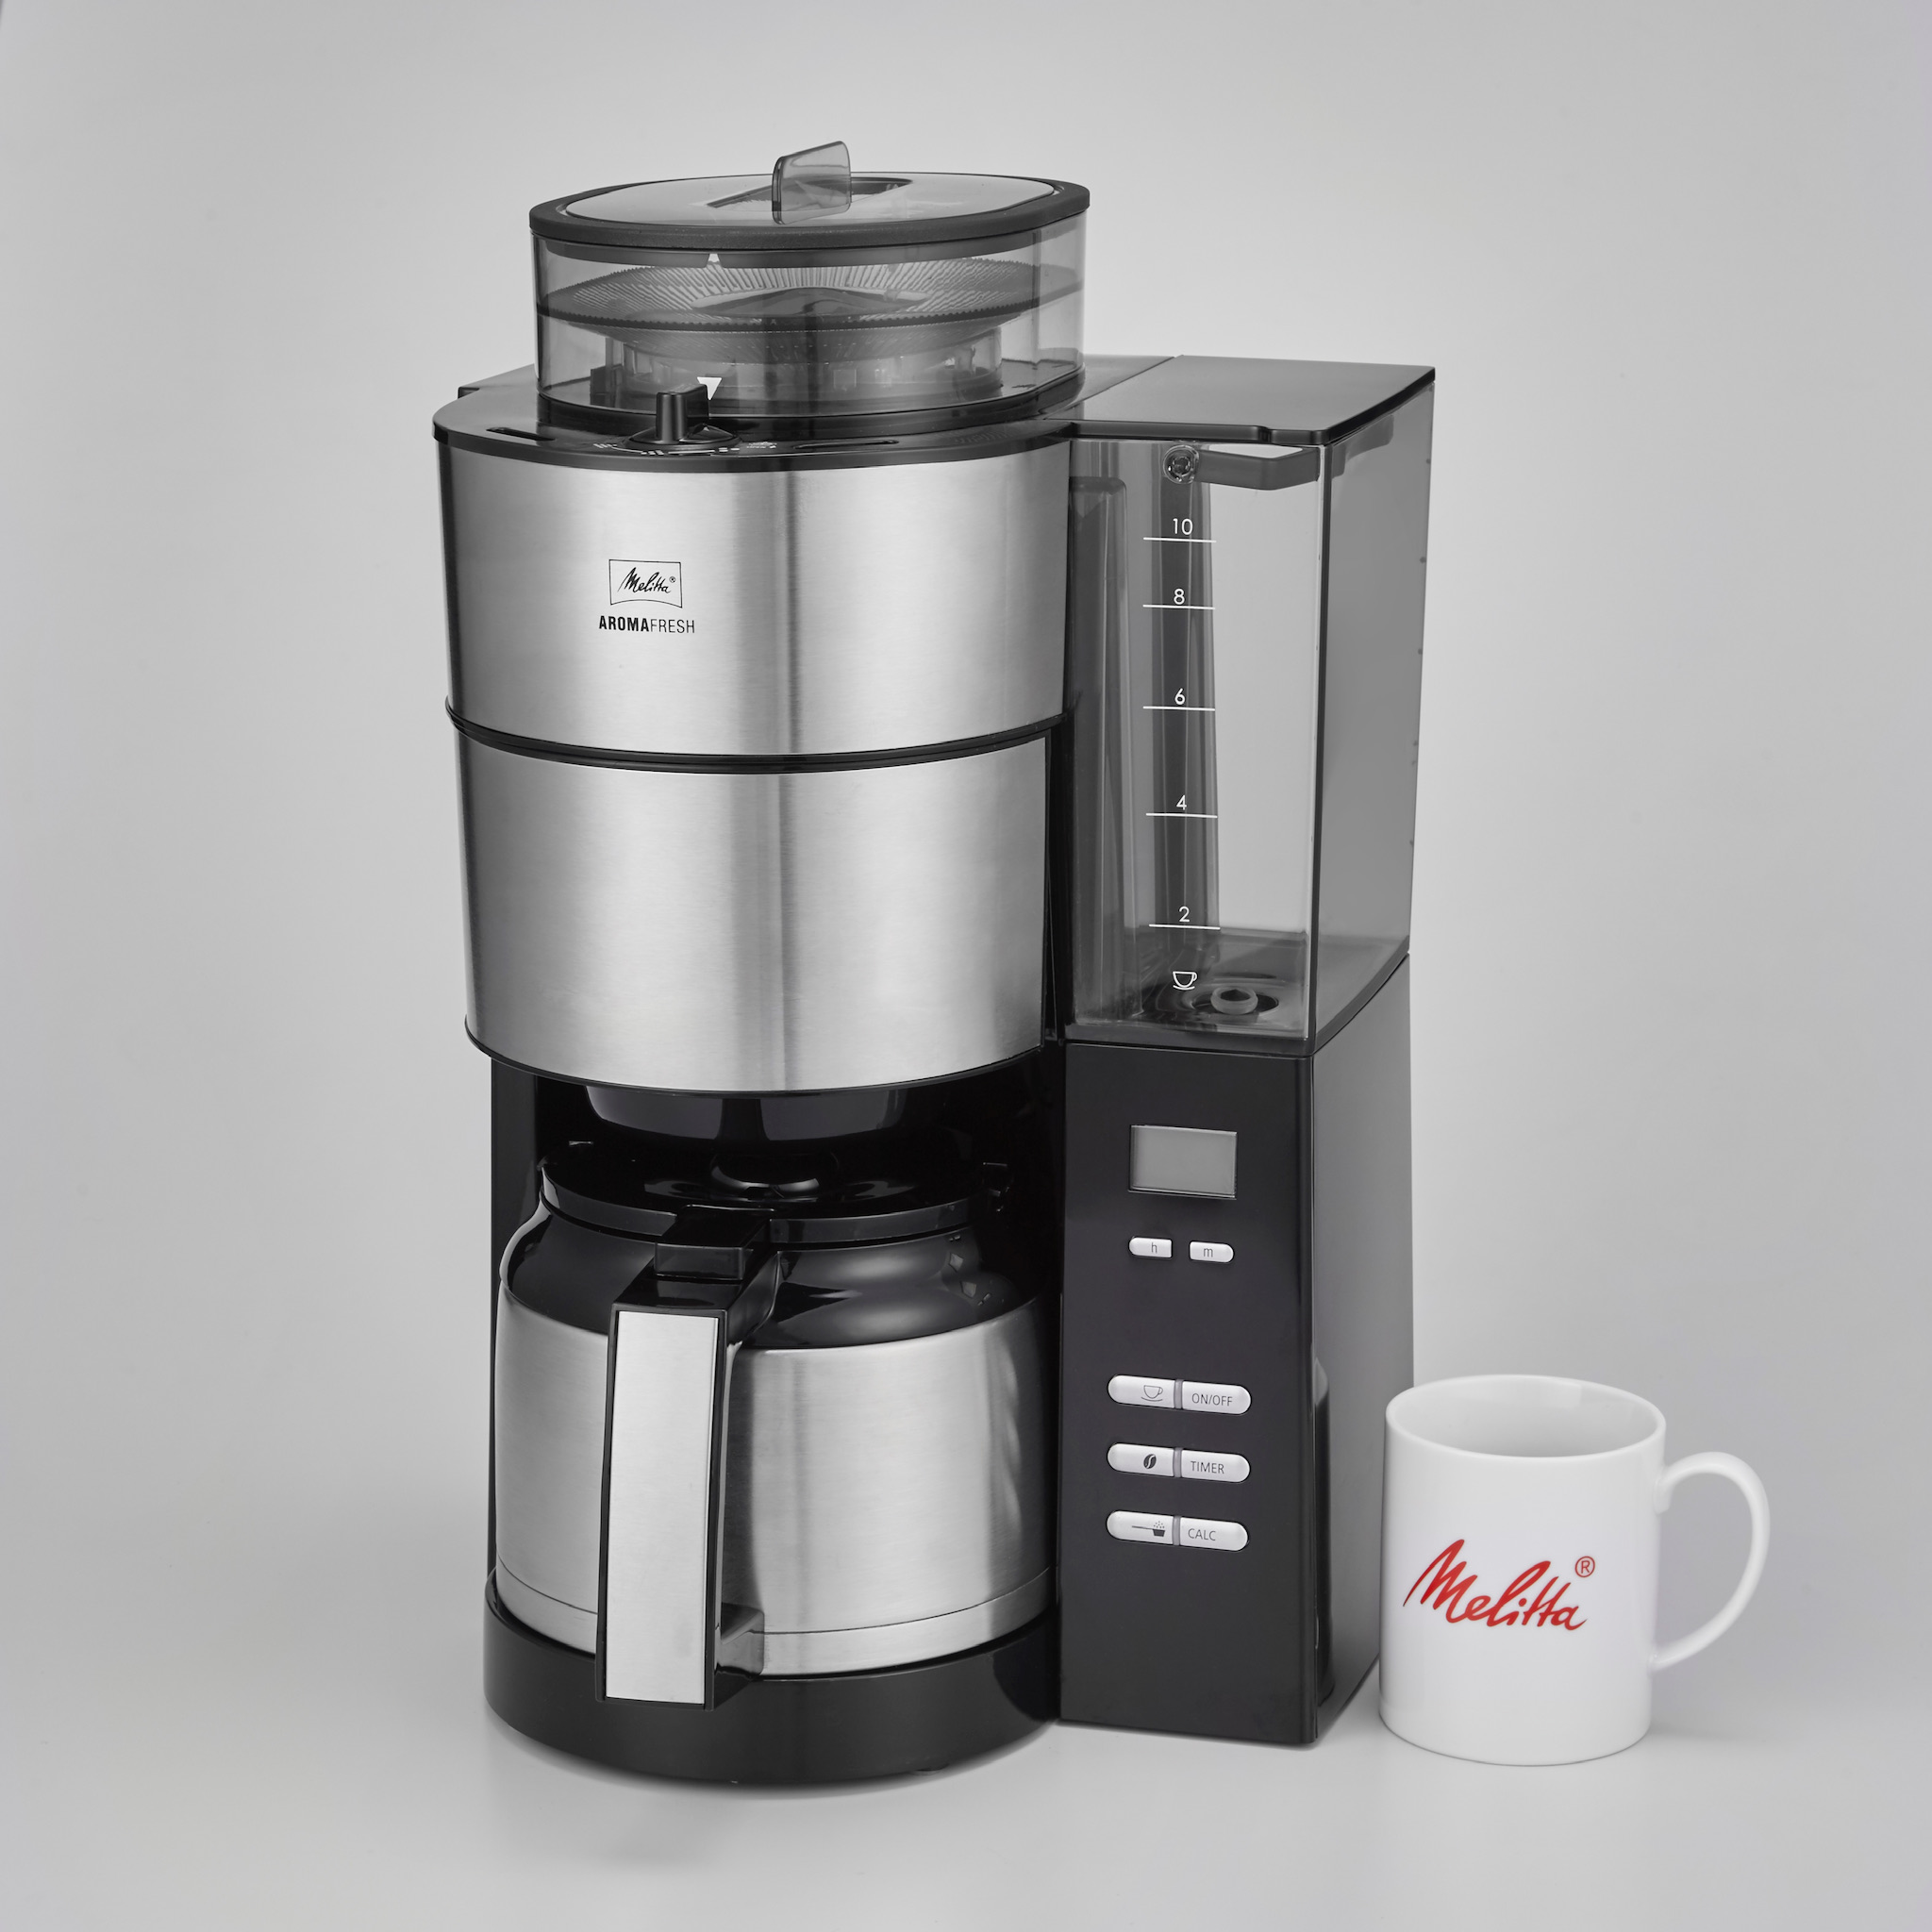 メリタ、ブランドで初となる、家庭用ミル付き全自動コーヒーメーカーを発売。 | 生活家電.com